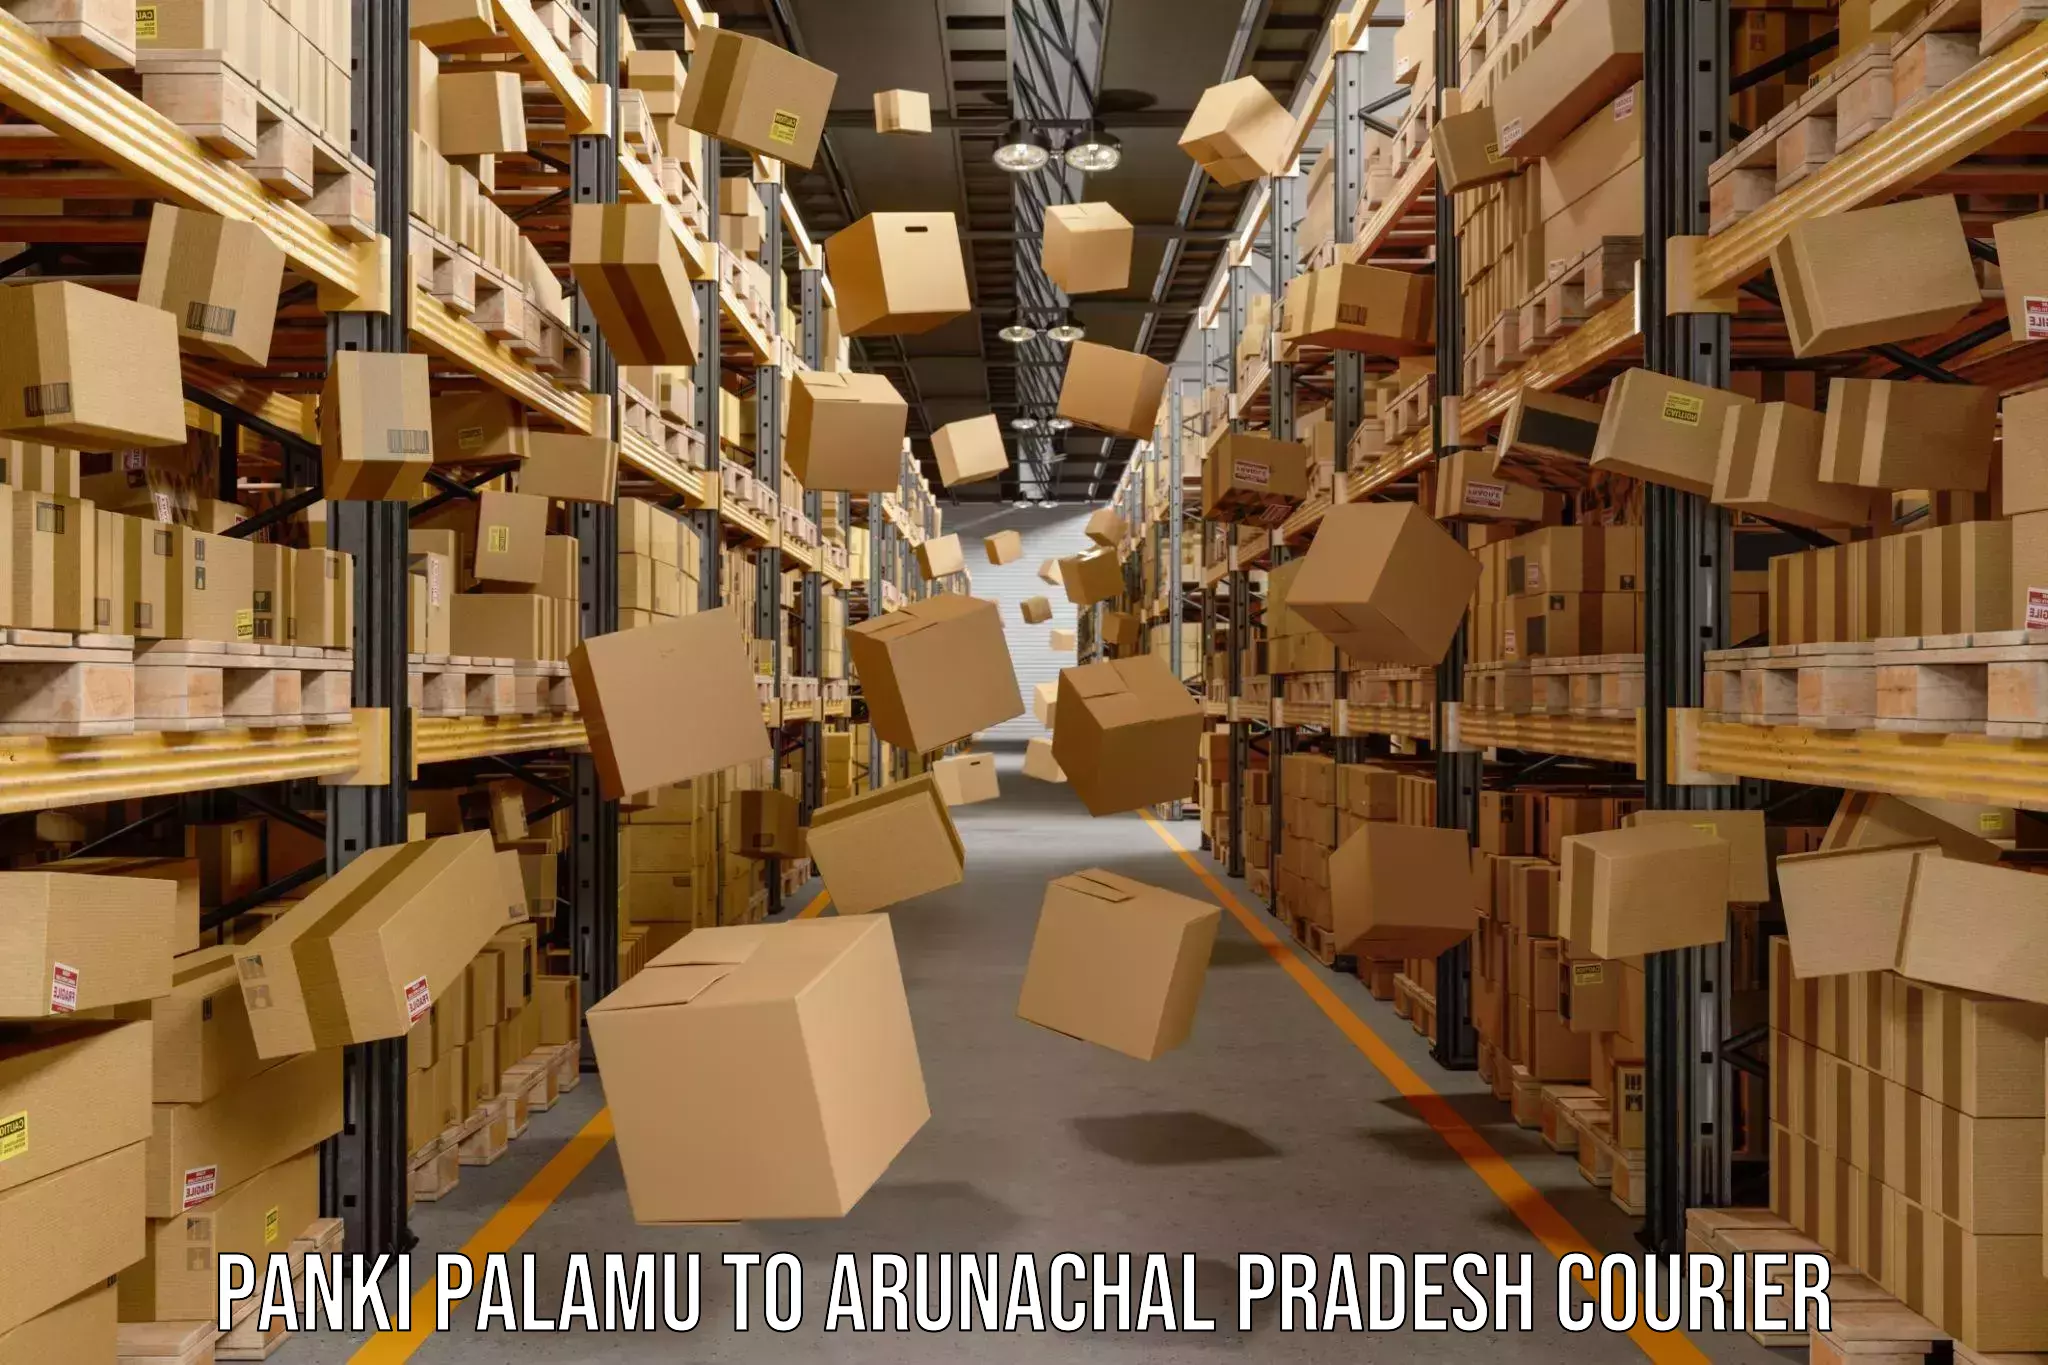 Personalized courier experiences Panki Palamu to Tirap